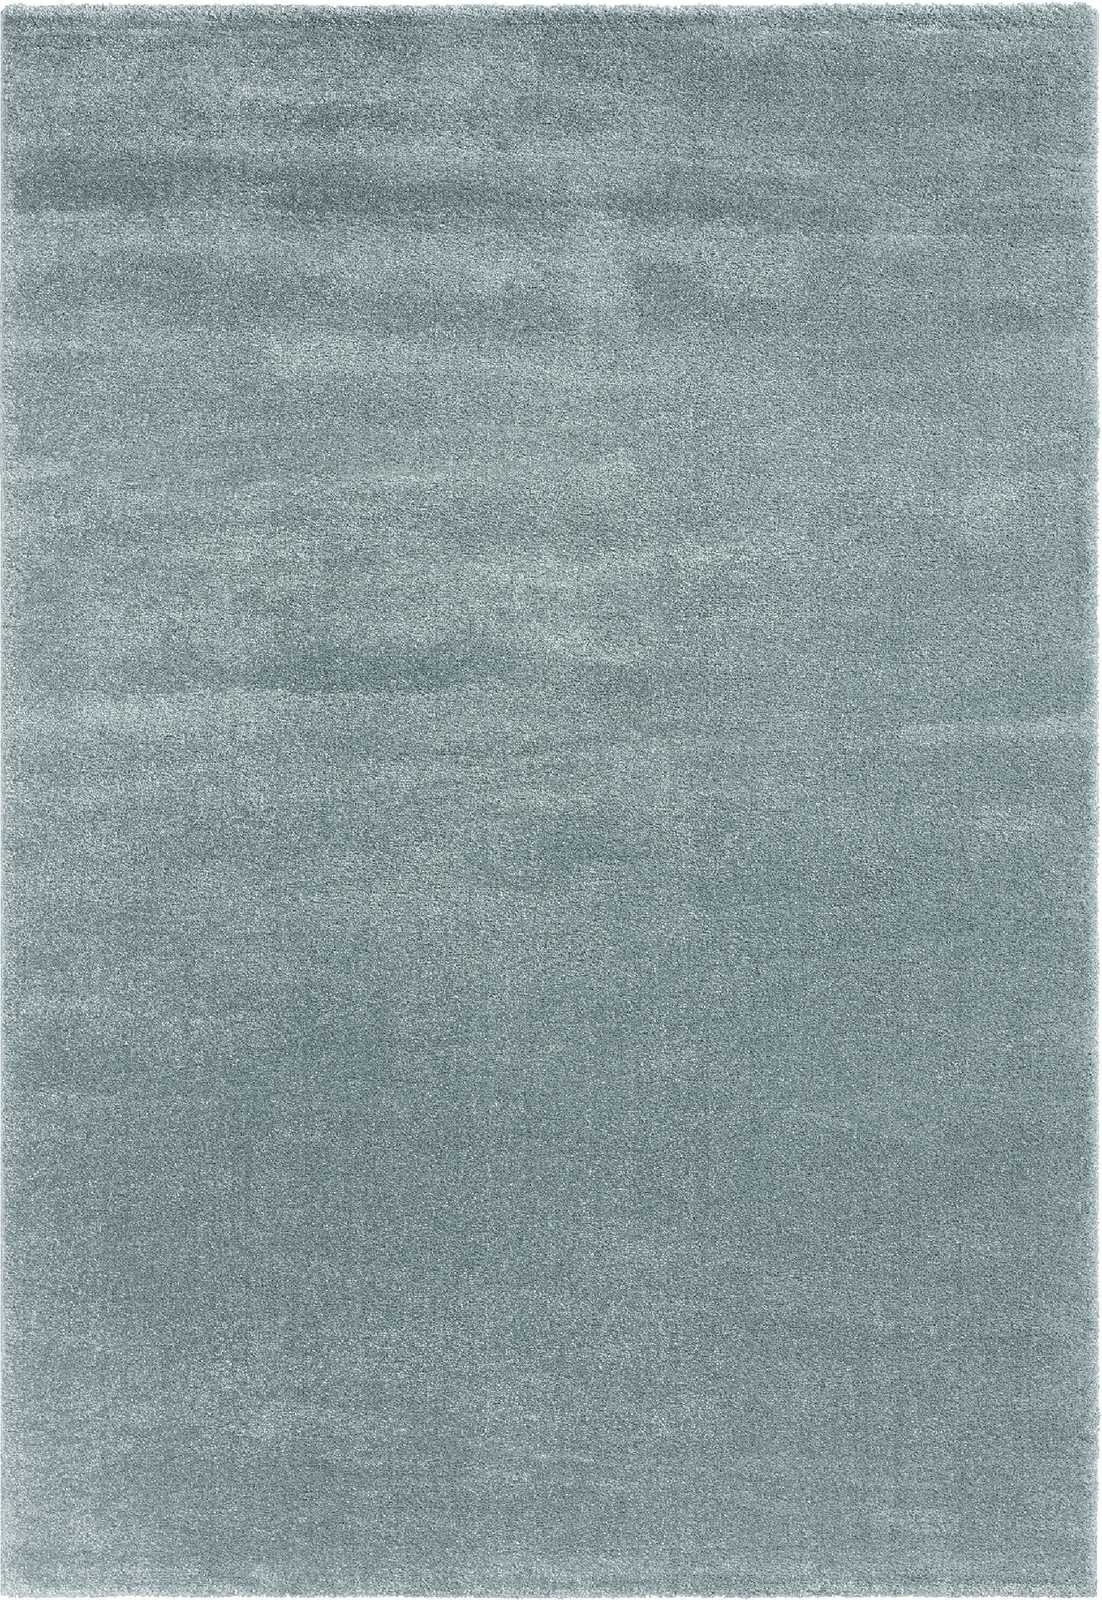             Eenvoudig kortpolig tapijt in blauw - 230 x 160 cm
        